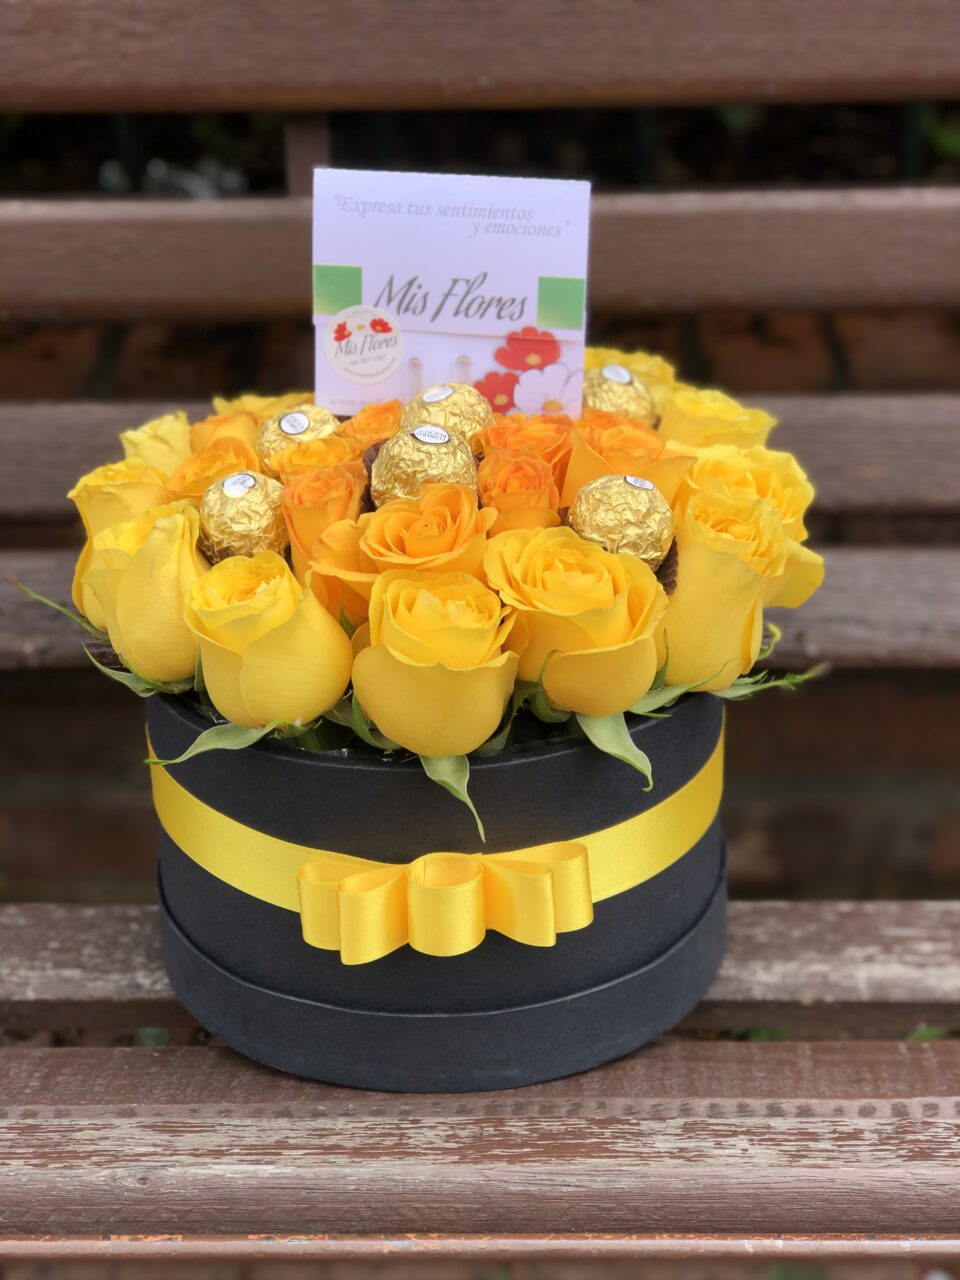 Caja deluxe redonda de rosas y chocolates - Mis Flores Bogotá.com